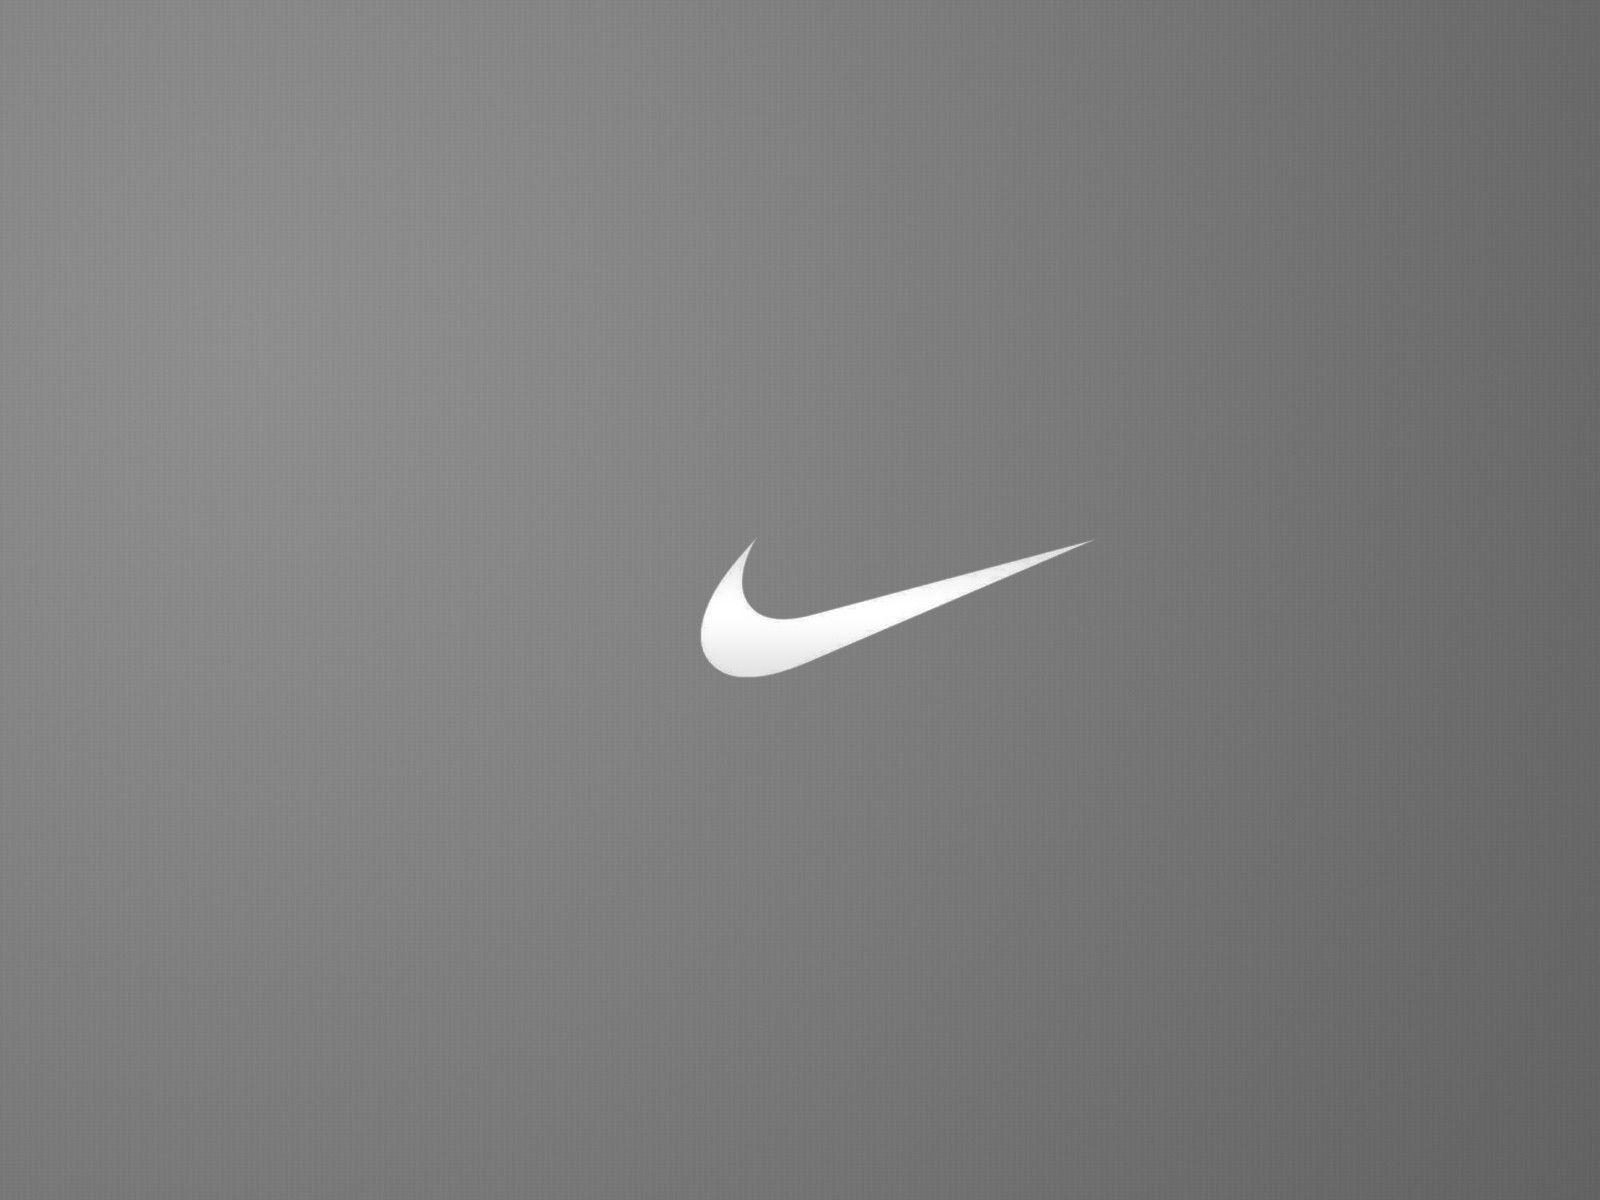 Nike Logo Wallpaper Free Download. Large HD Wallpaper Database